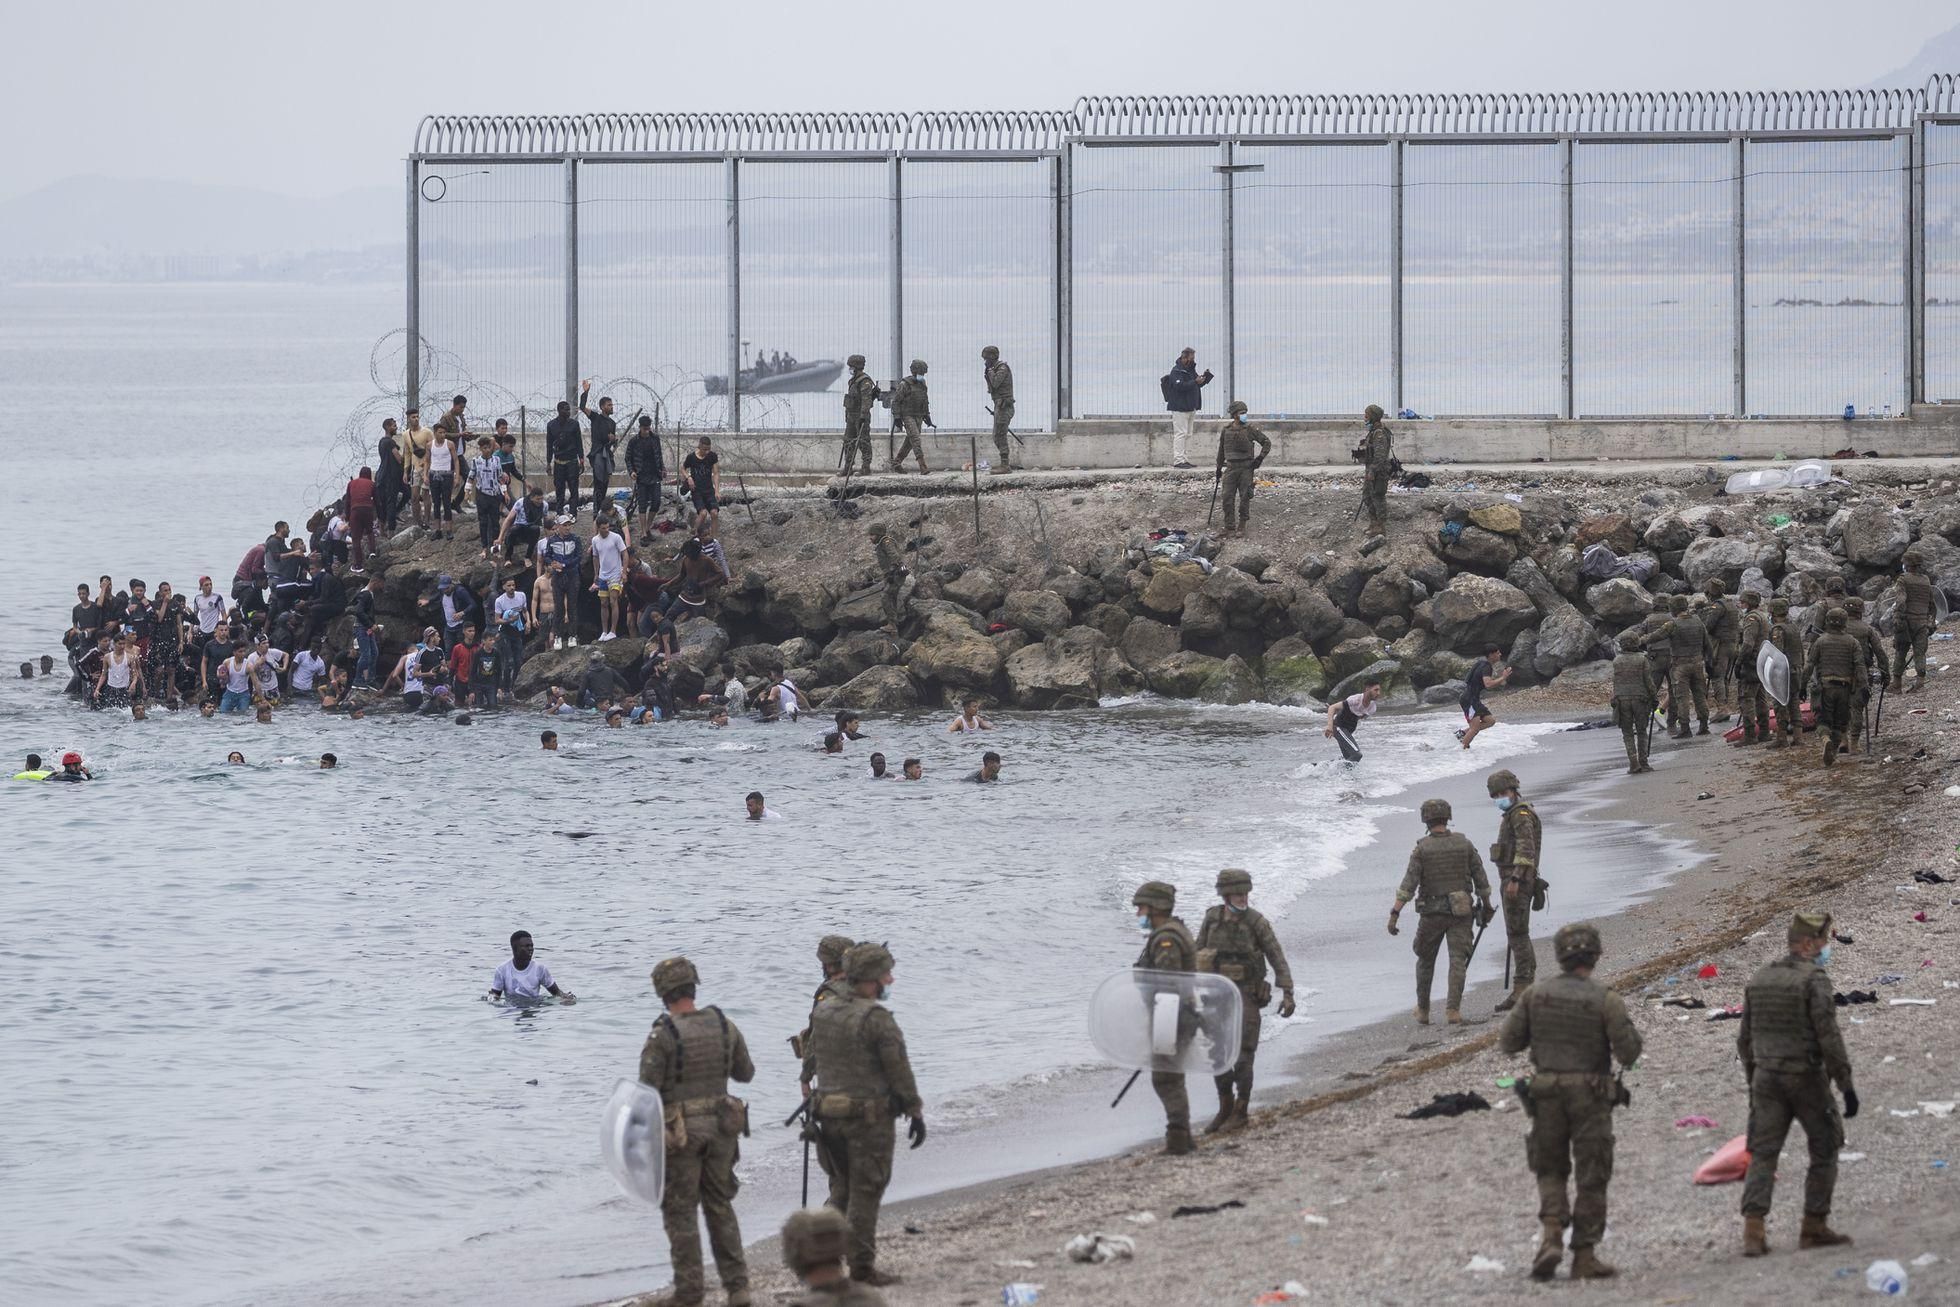 Испания стягивает войска к границе с Марокко из-за мигрантов